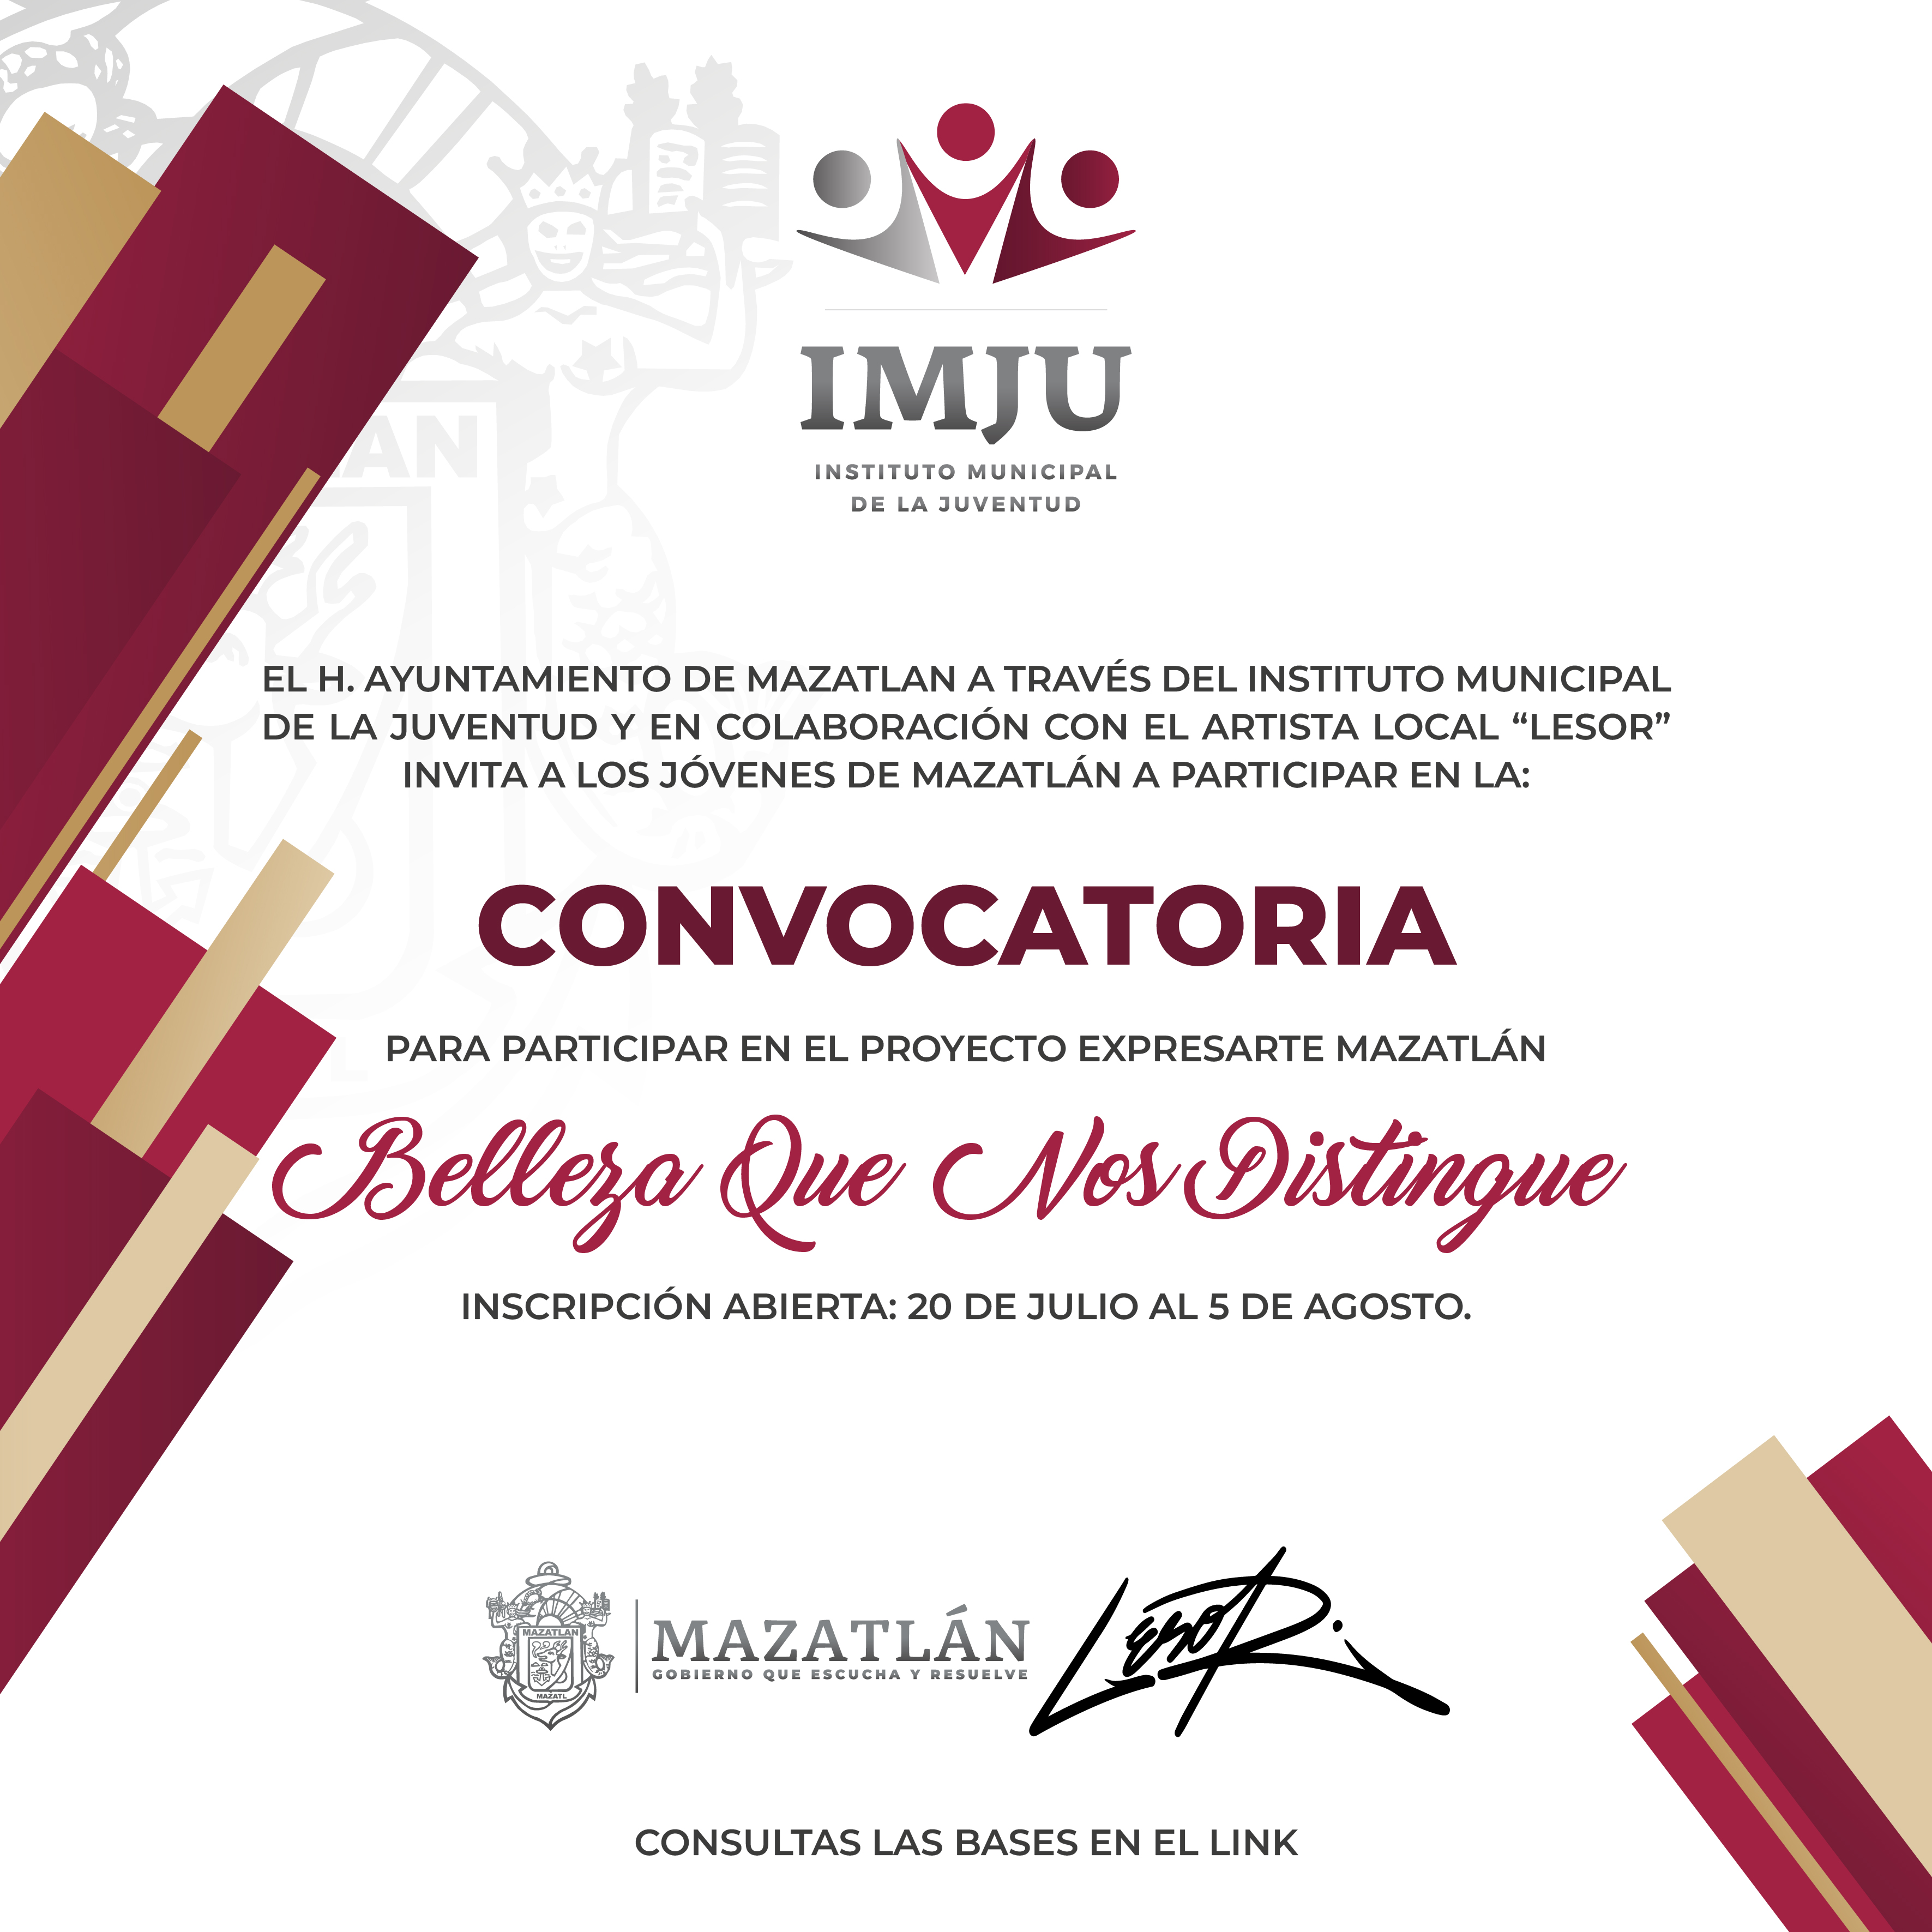 El Gobierno de Mazatlán a través del Instituto Municipal de la Juventud lanza convocatoria para el proyecto “Expresarte Mazatlán, belleza que nos distingue”.